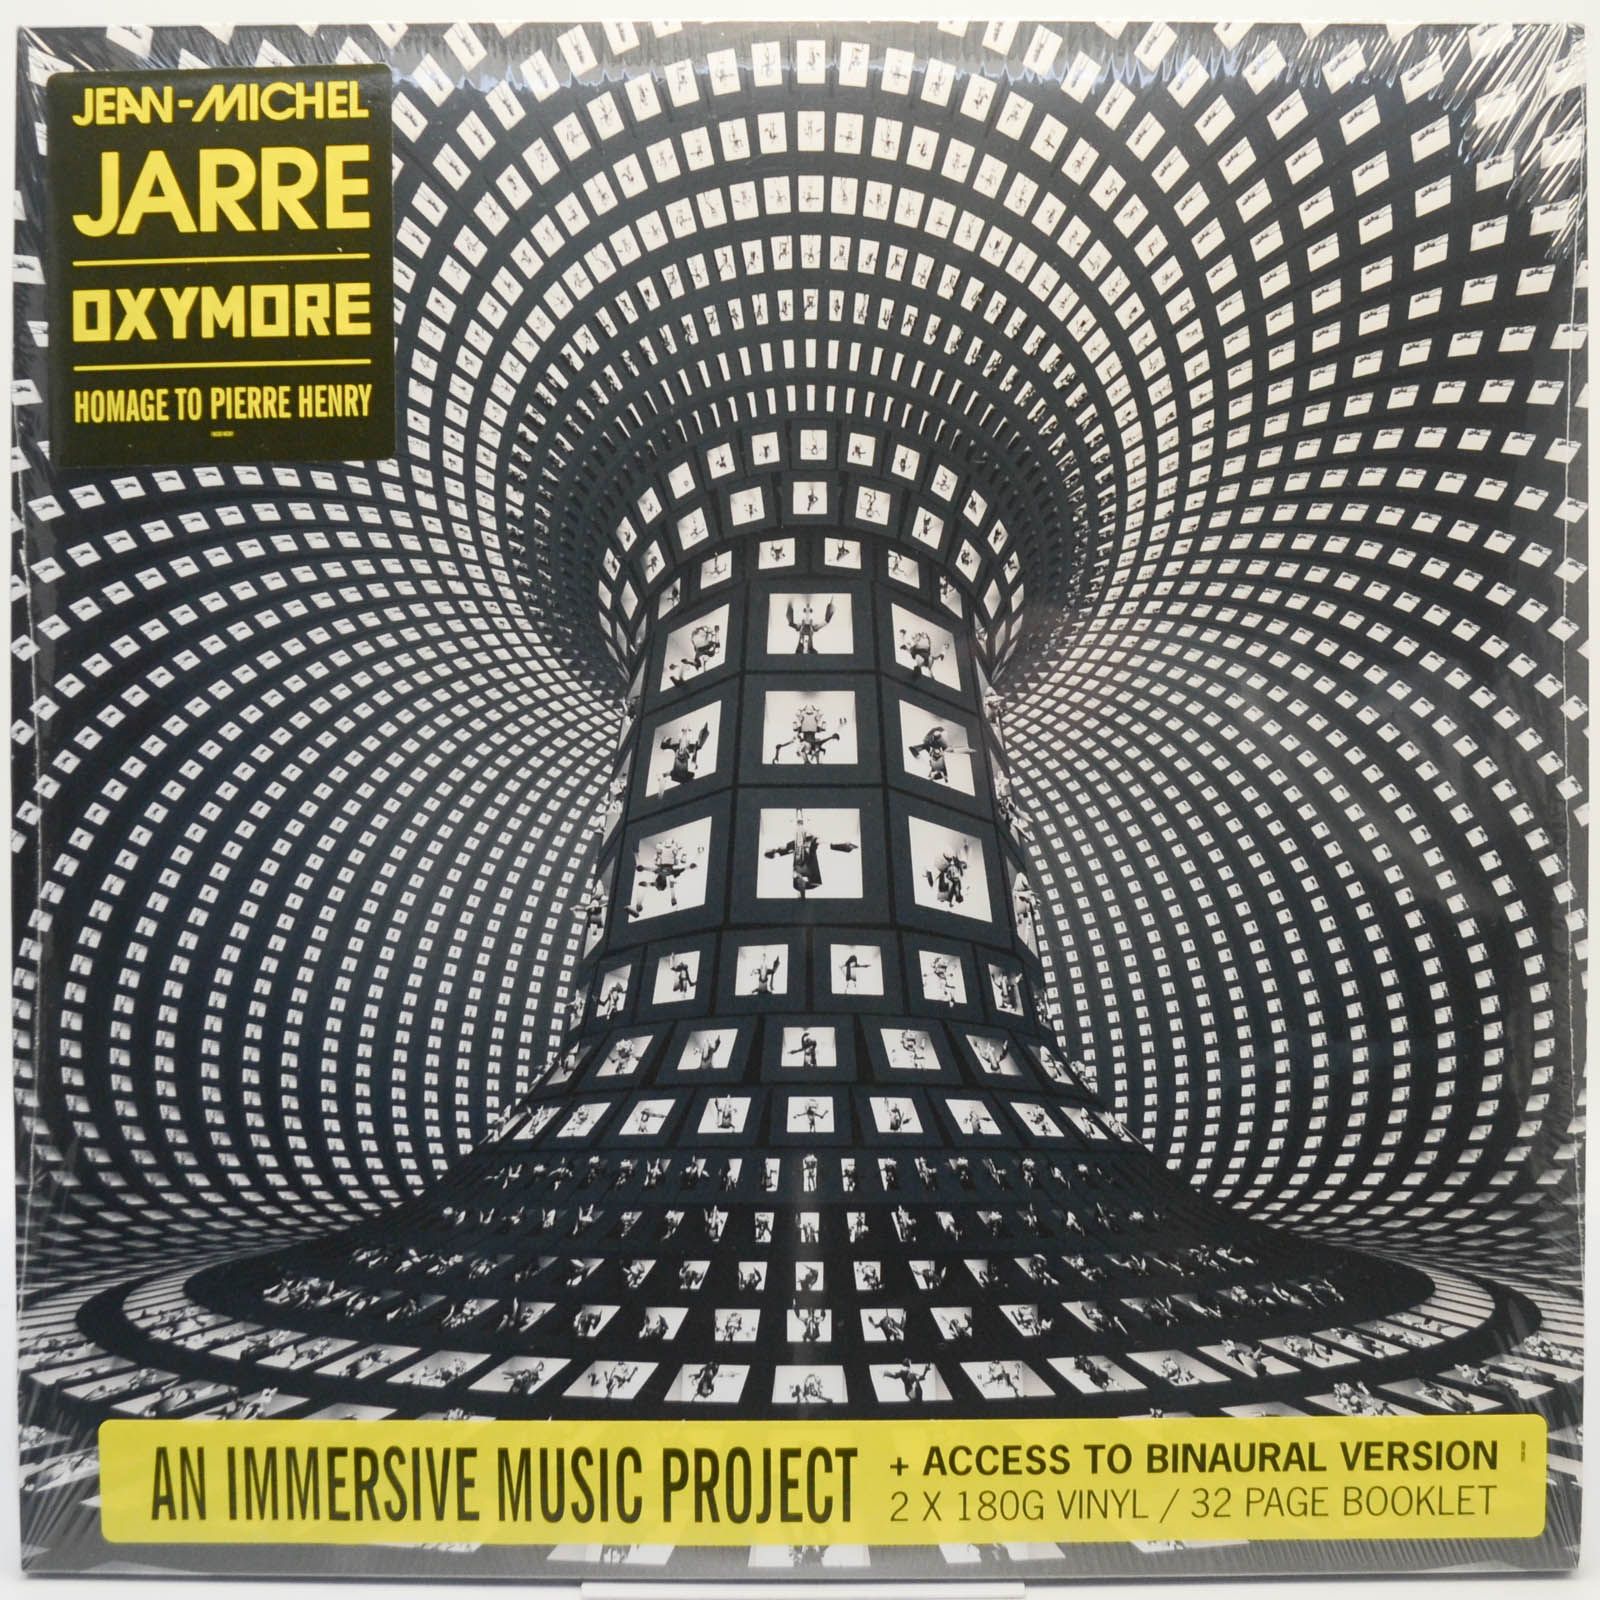 Jean-Michel Jarre — Oxymore (2LP), 2022